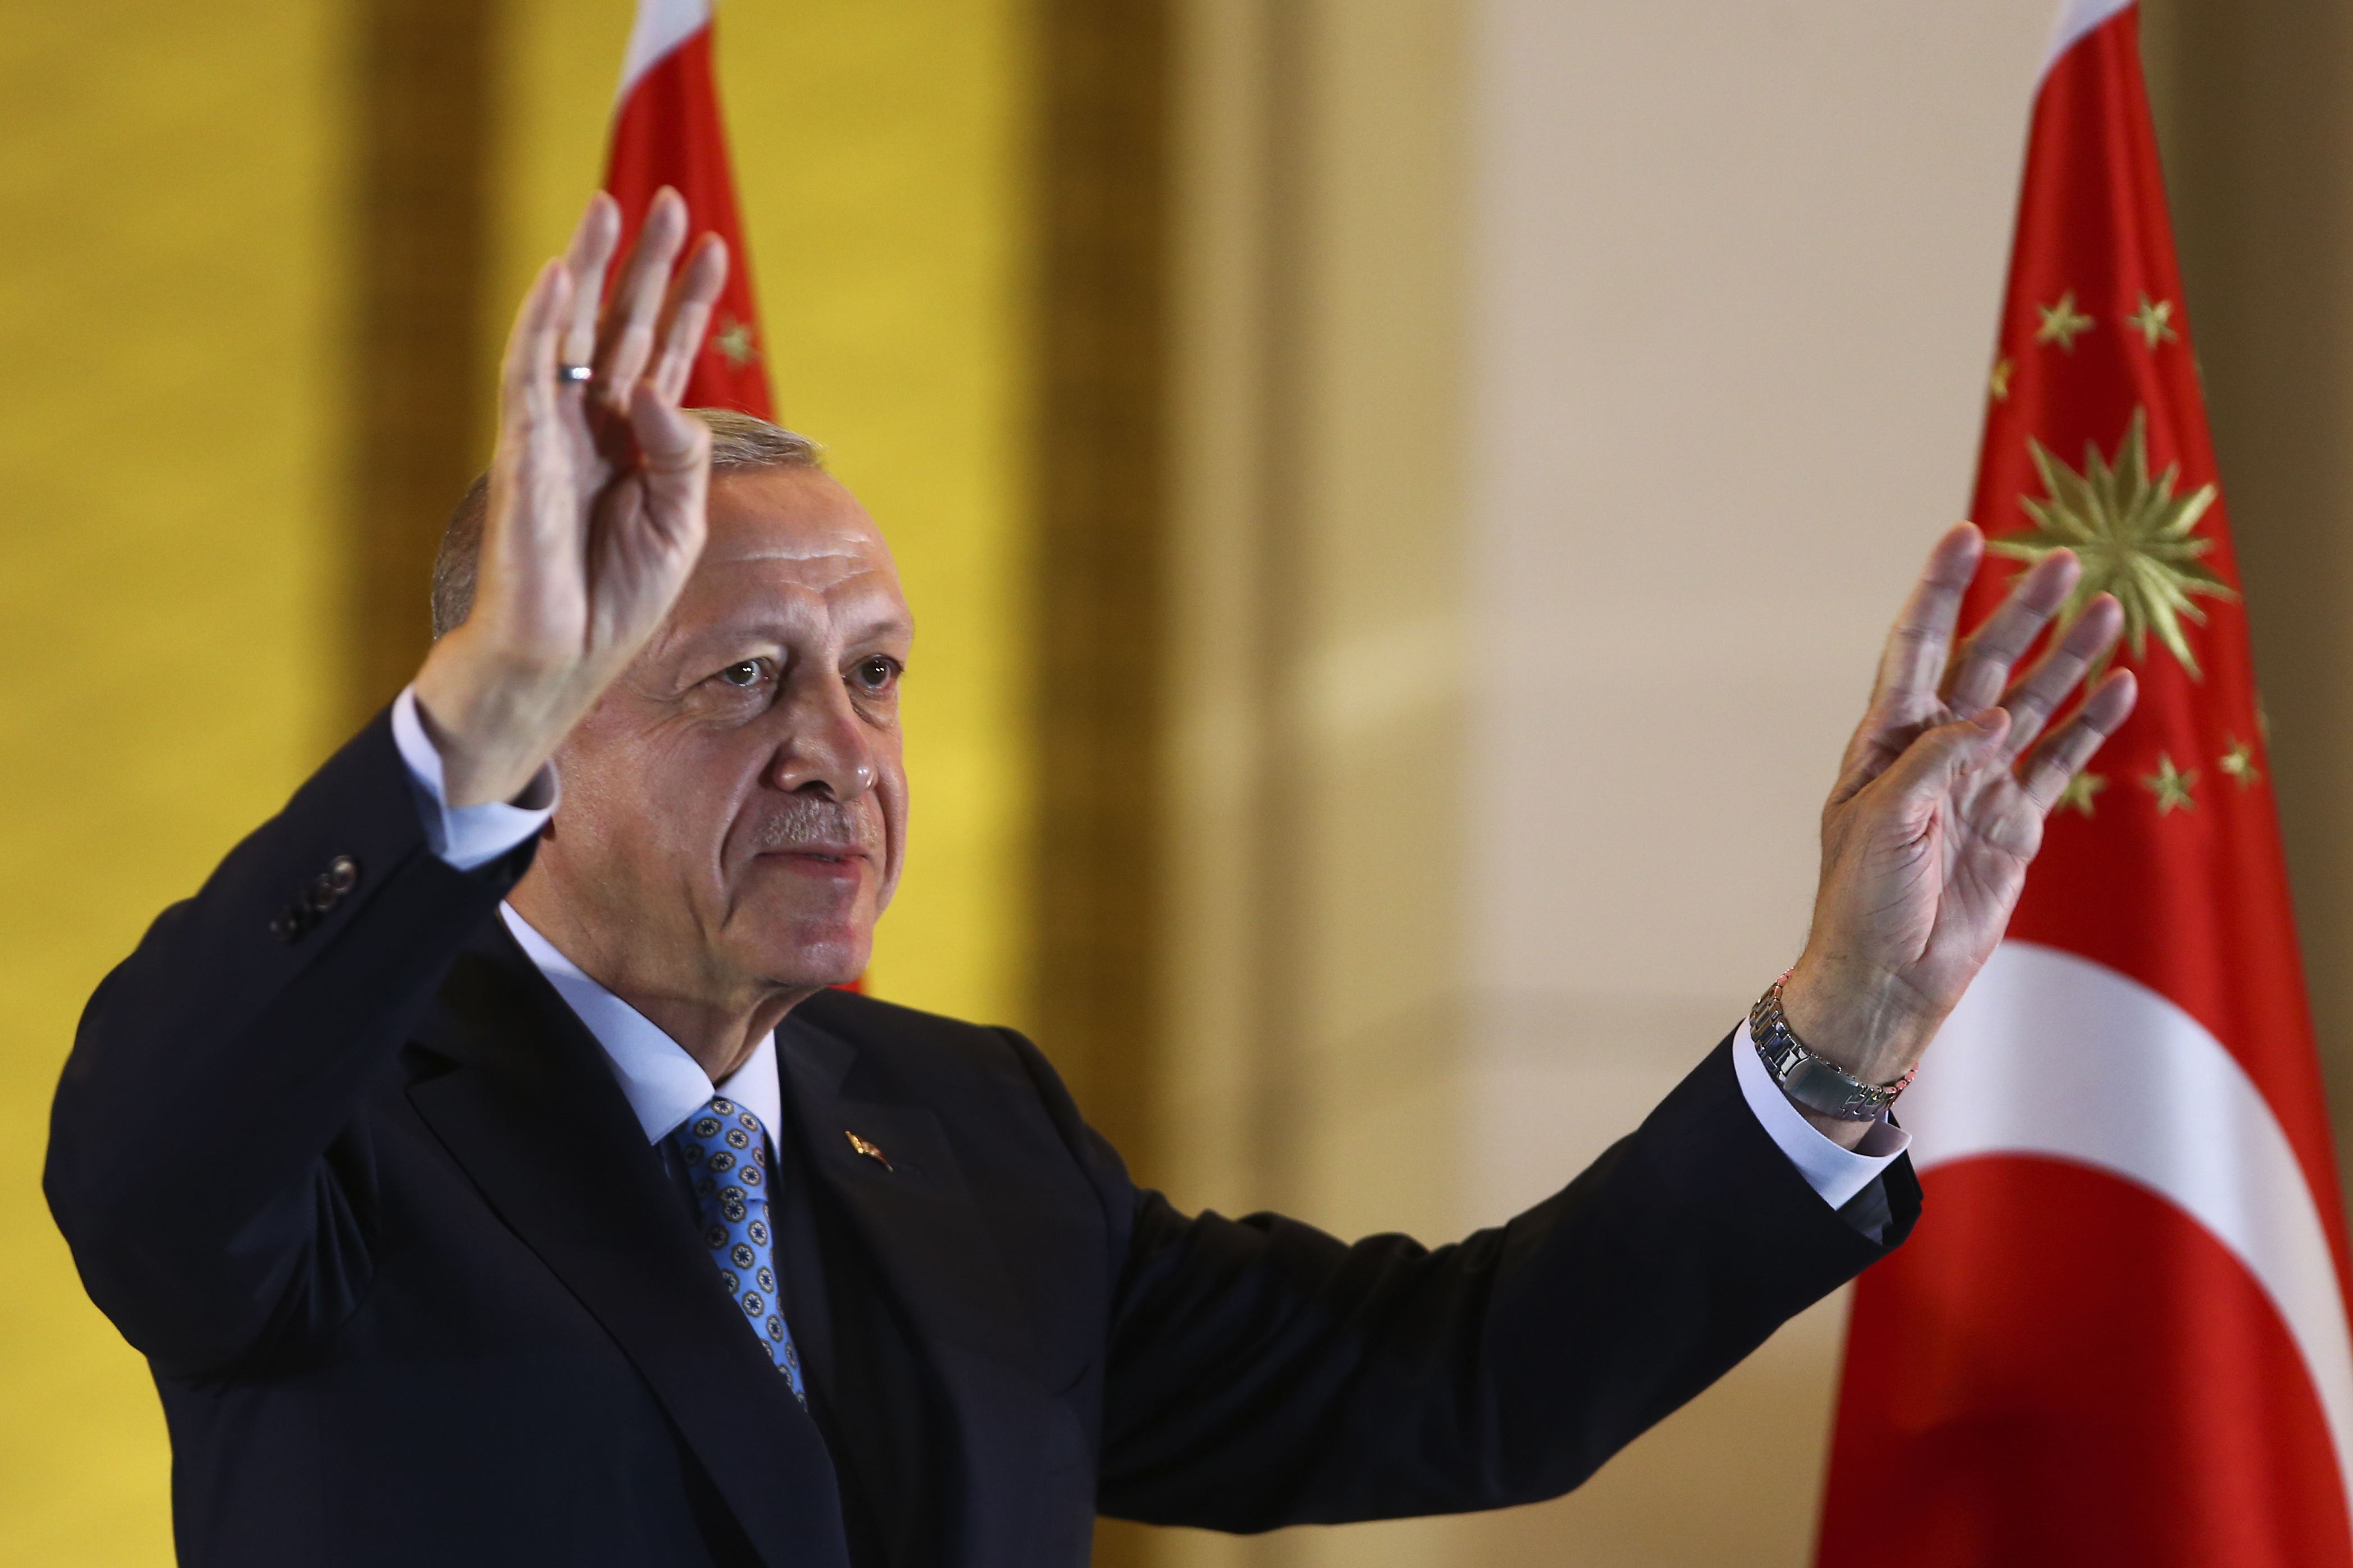 Erdogan vinker med tyrkisk flagg i bakgrunnen.